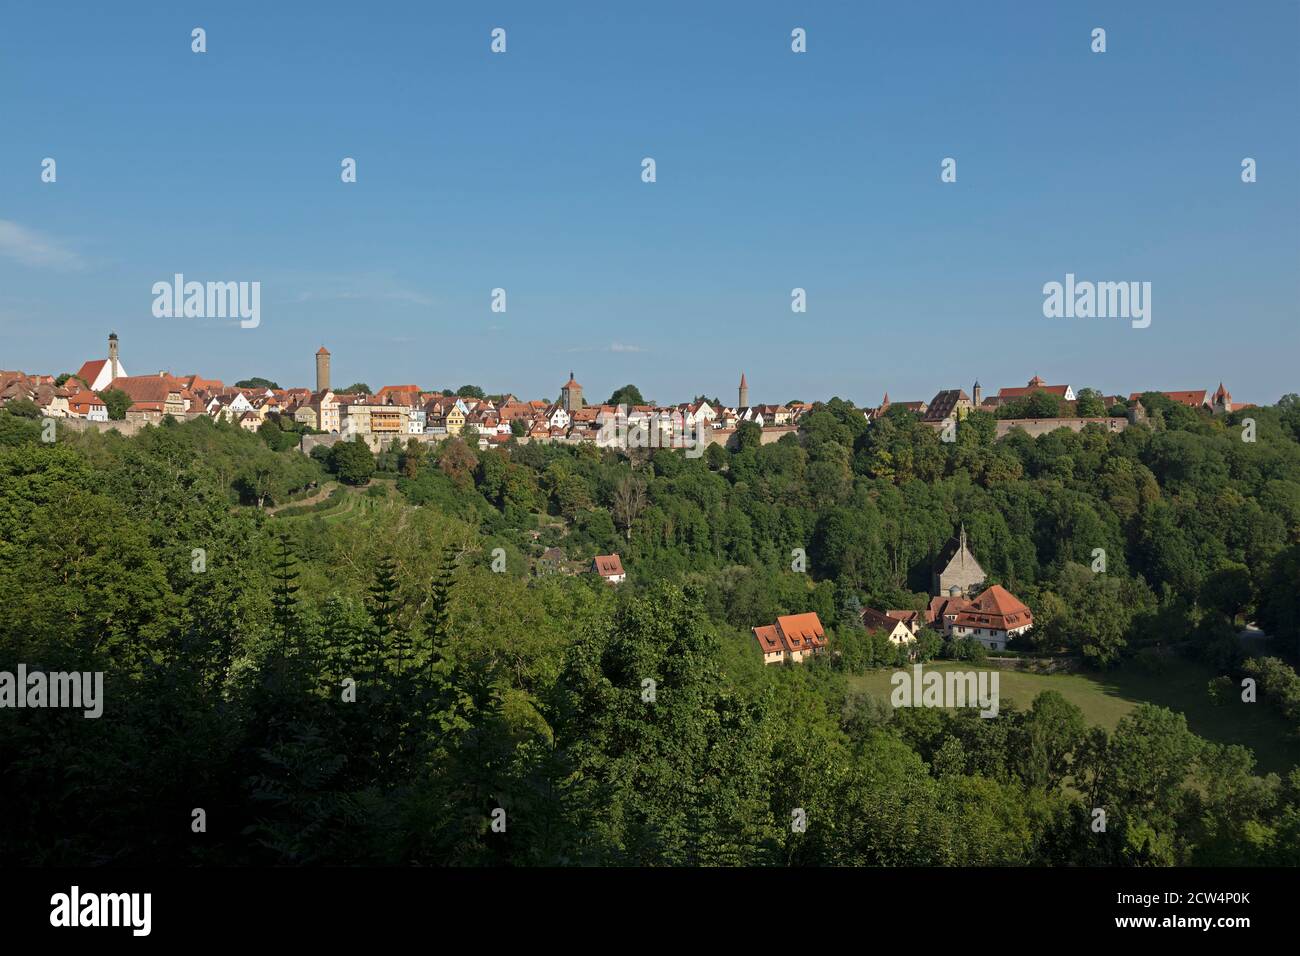 Vista panoramica della parte meridionale del centro storico e della Chiesa di Kobolzell, Rothenburg ob der Tauber, Franconia Centrale, Baviera, Germania Foto Stock